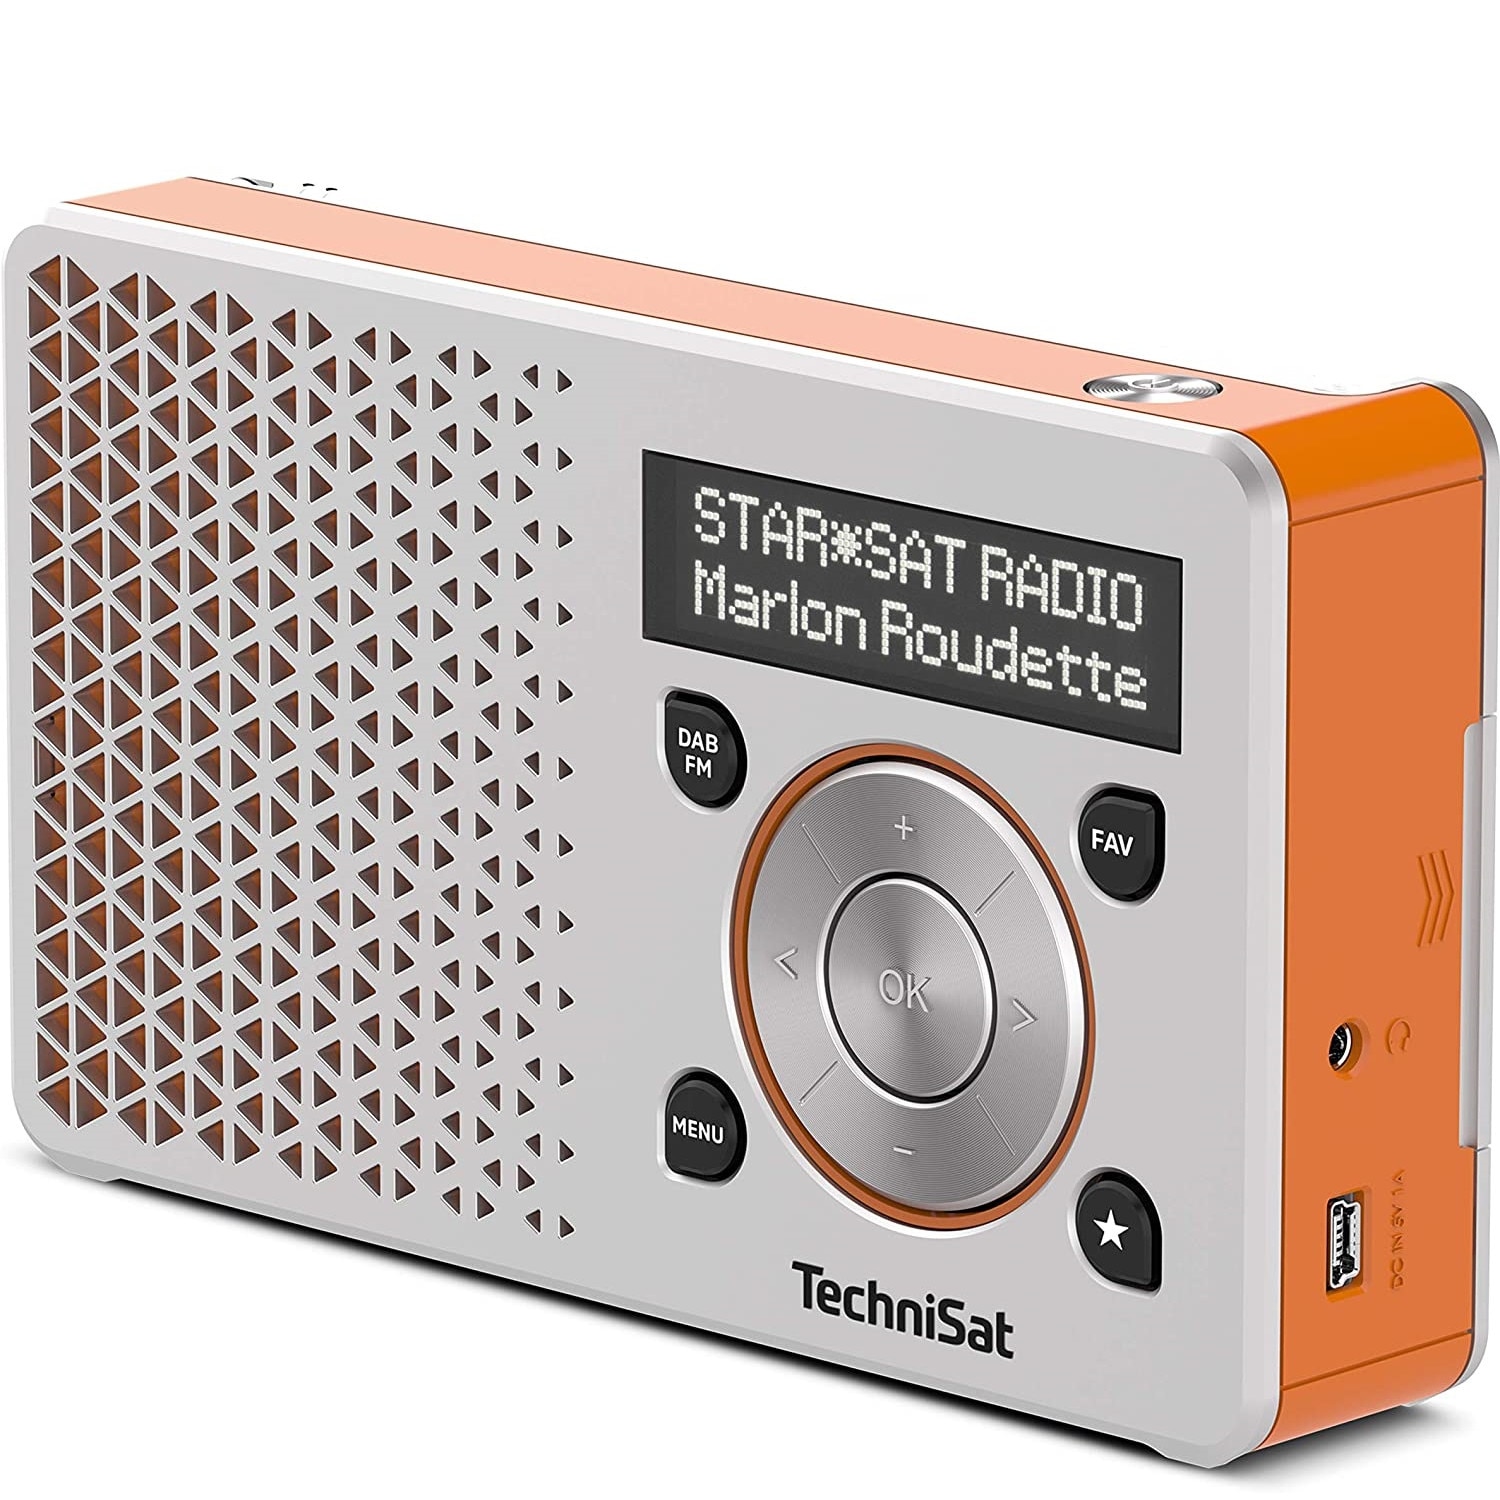 Radio TechniSat Digitradio 1, 1W, portocaliu/argintiu miniUSB, ecran DAB+, OLED, portabil